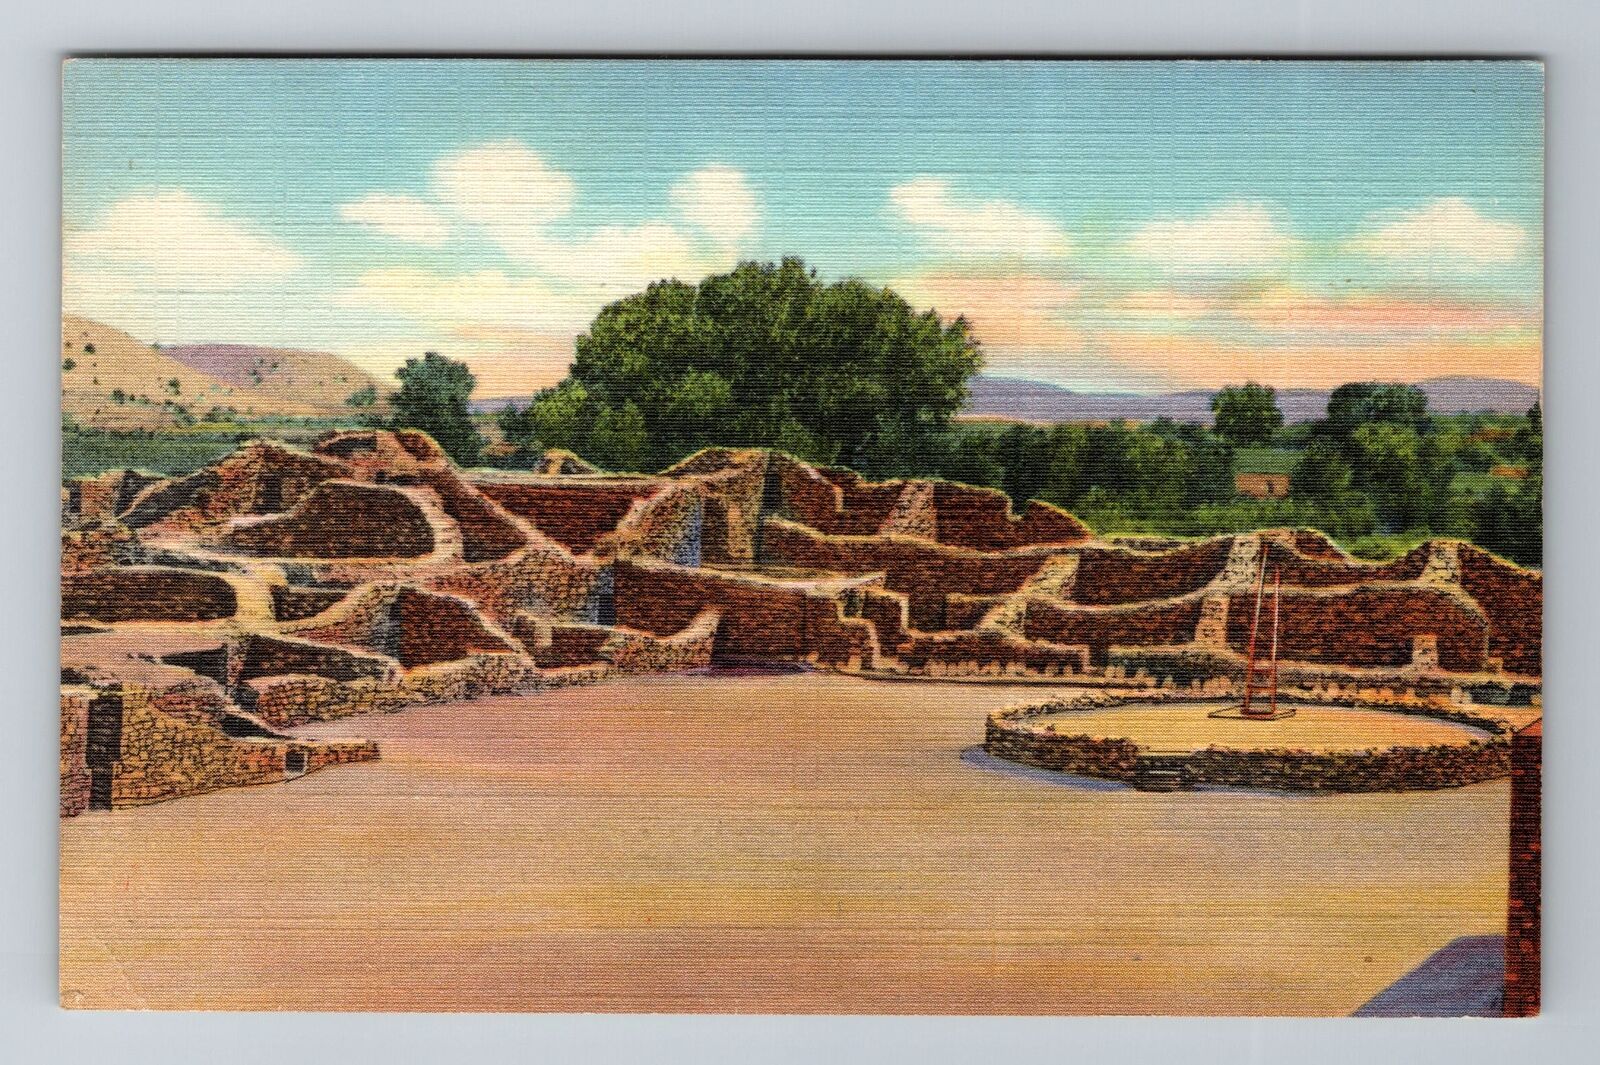 Aztec NM-New Mexico, Aztec Ruins National Monument, Antique Vintage Postcard